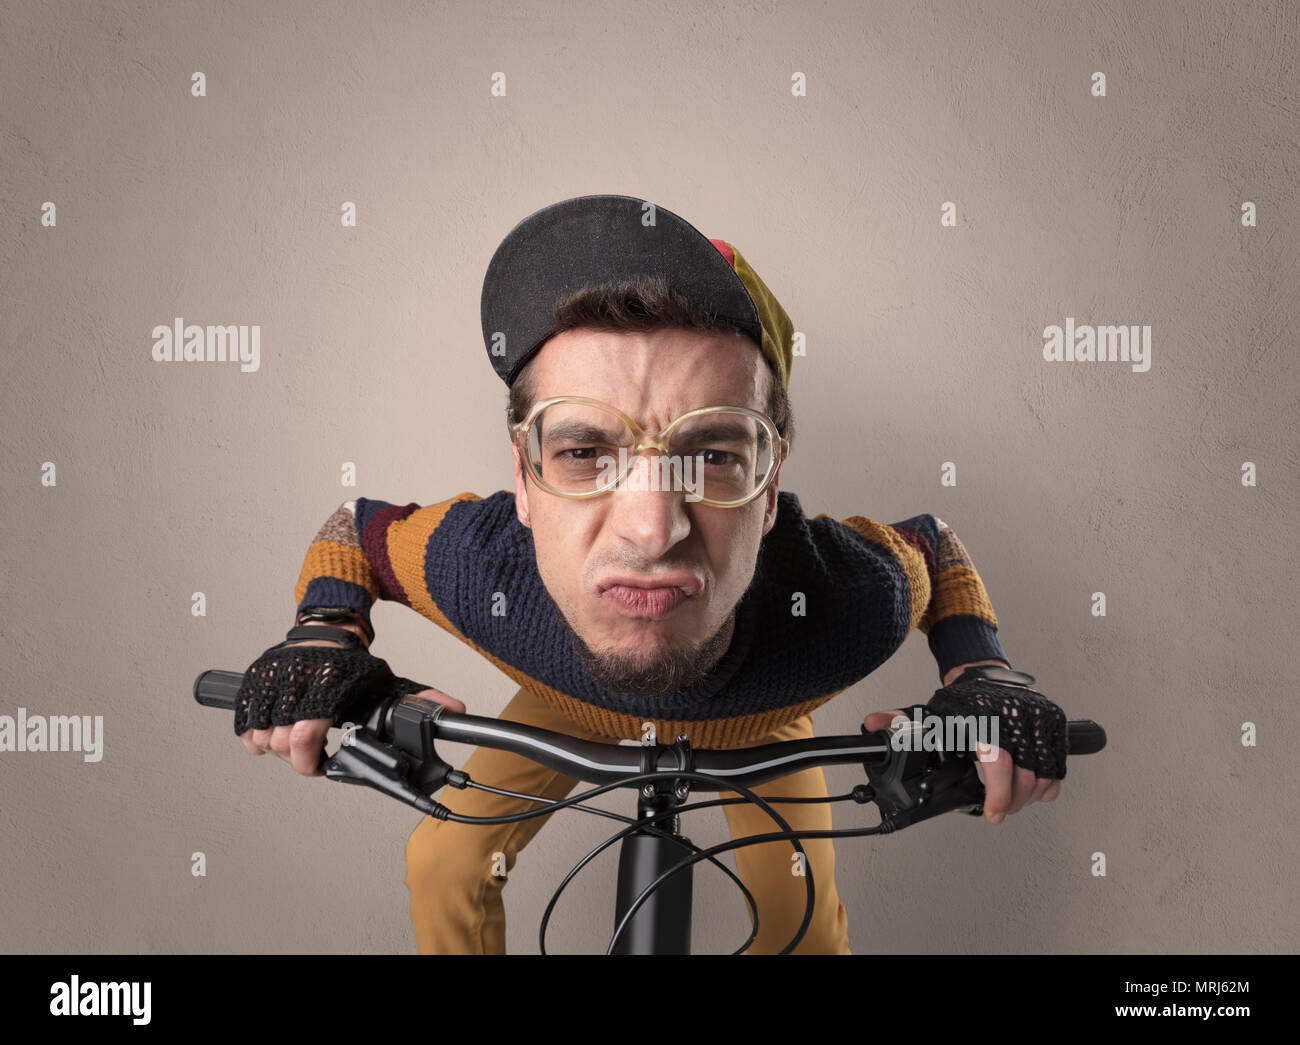 Les jeunes motards idiot Nerd sur un vélo avec oldschool outfit Banque D'Images